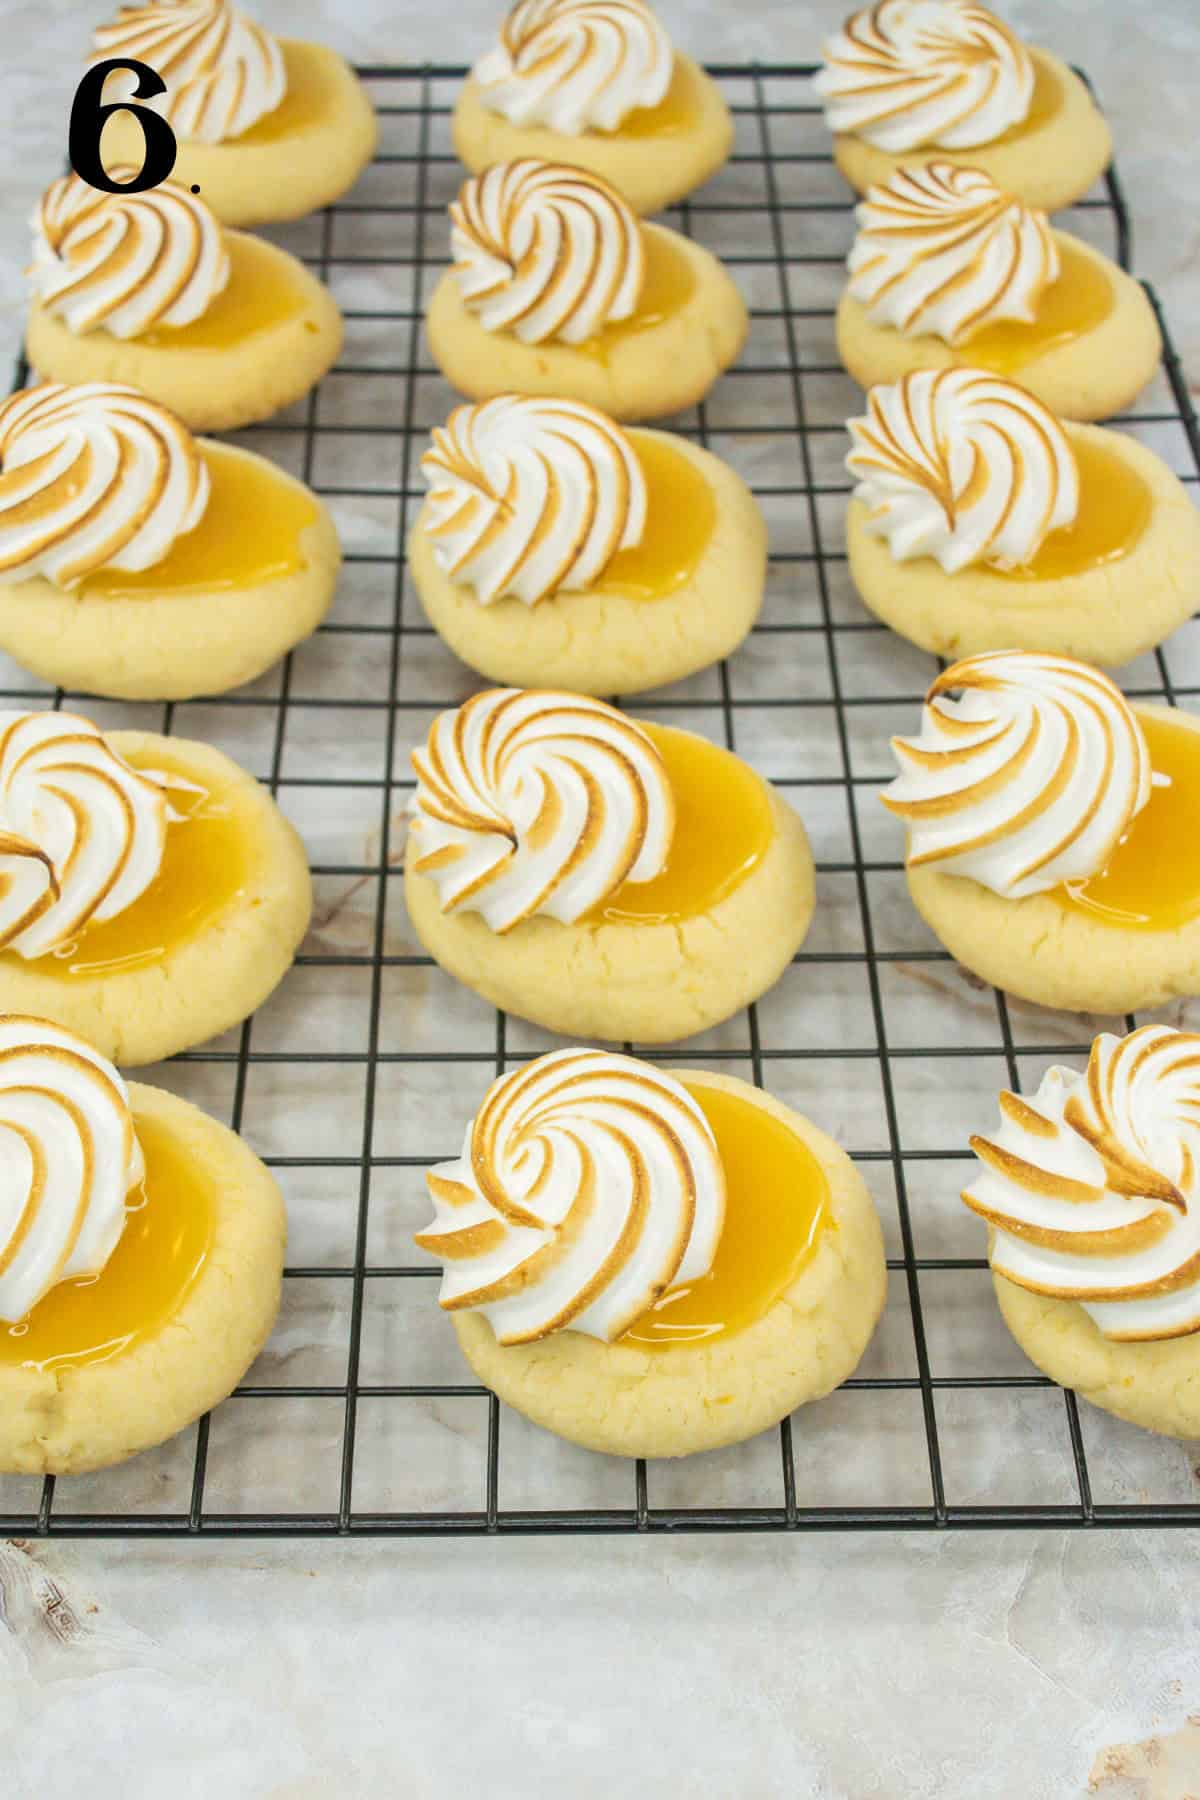 How to Make Lemon Meringue Cookies Step 6 - cookies with lemon curd and torched meringe.